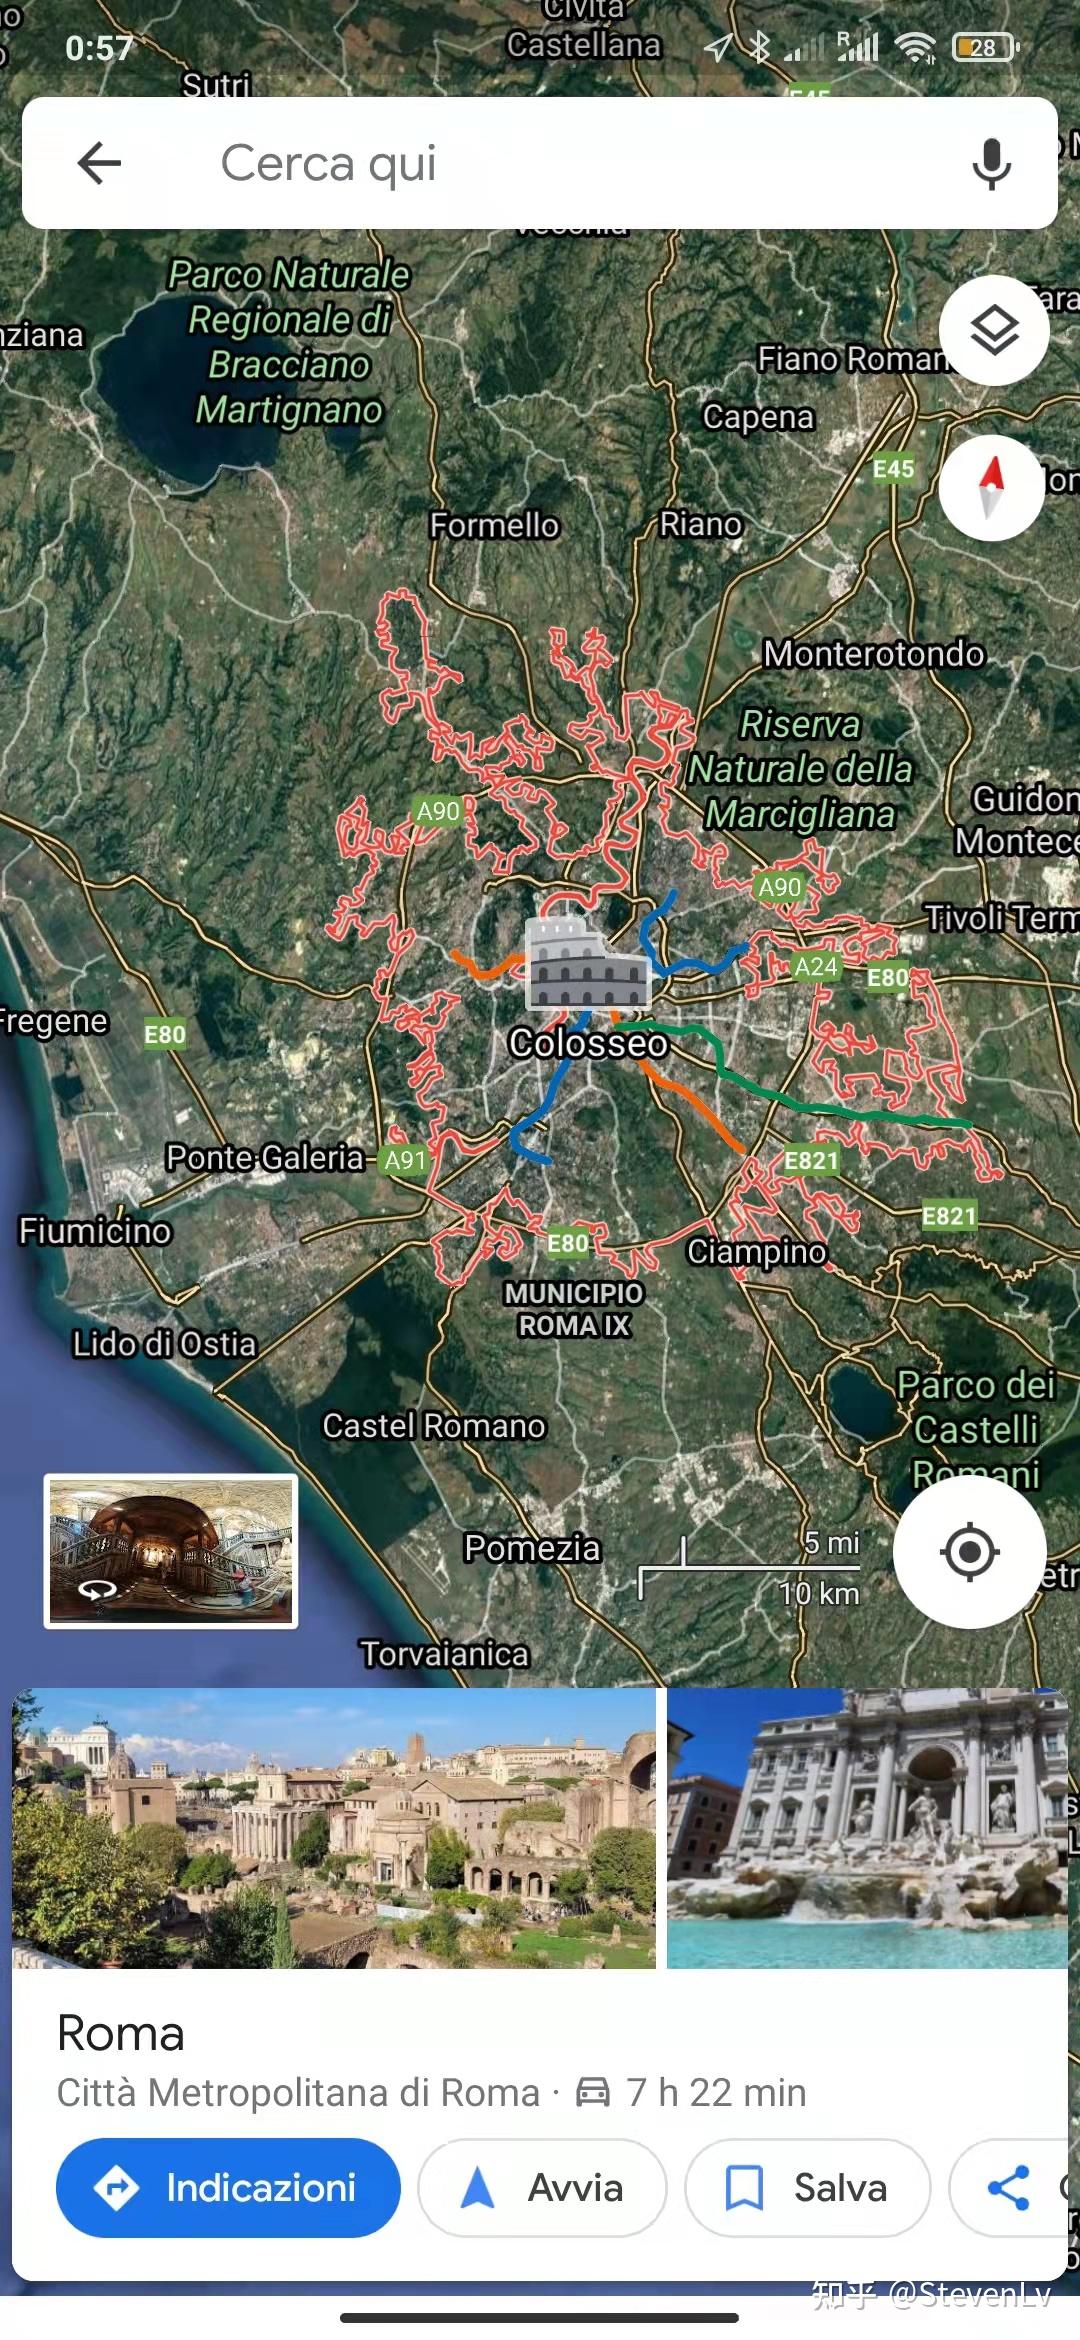 米兰旅游景点地图_米兰王宫旅游_微信公众号文章